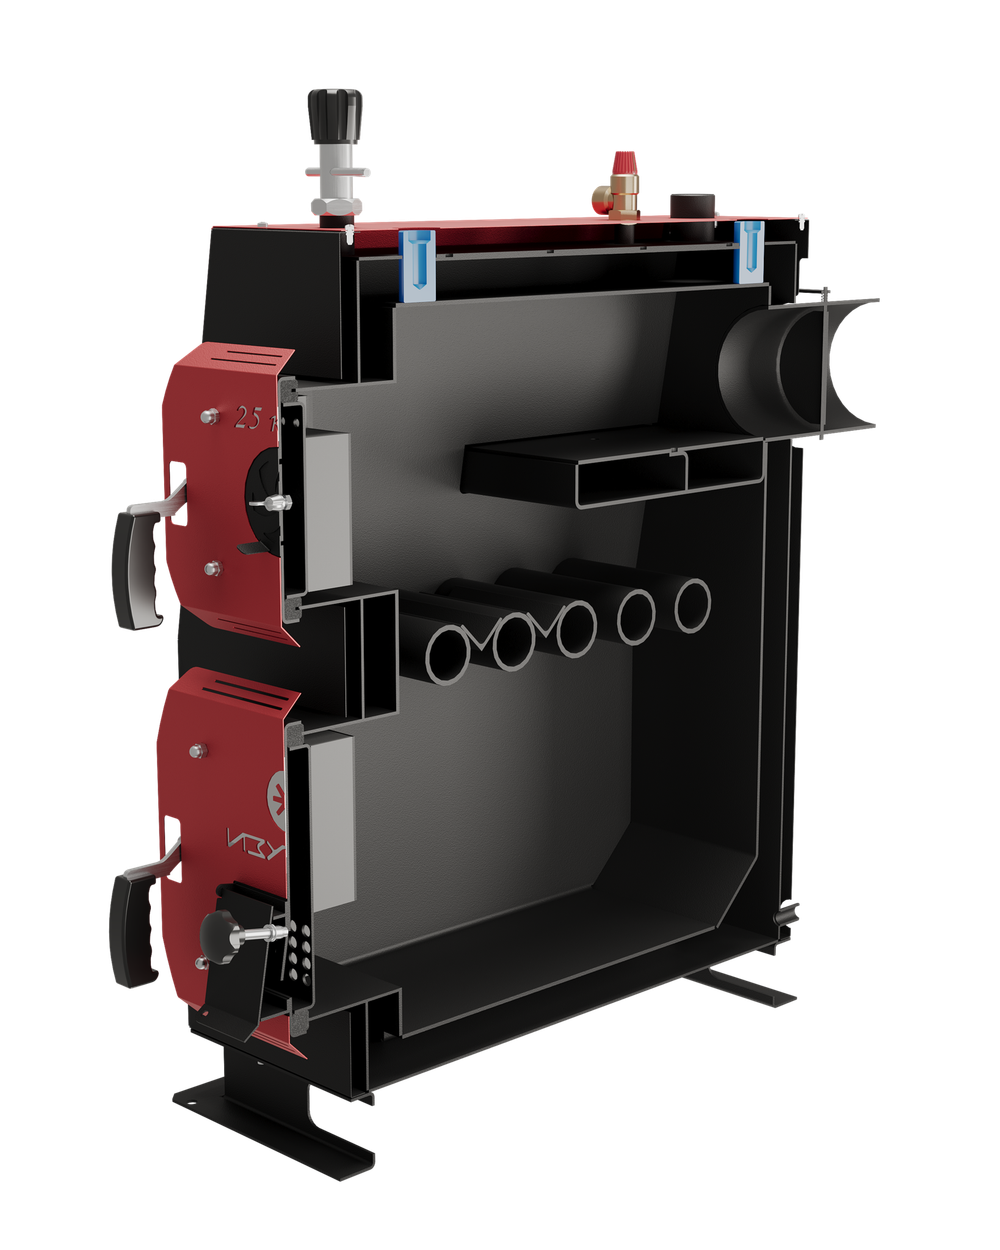 Твердотопливный котел длительного горения Изуран-100 в кожухе на 100 кВт. Отапливаемое помещение до 2700 куб.м. В разрезе. Производитель - Изуран